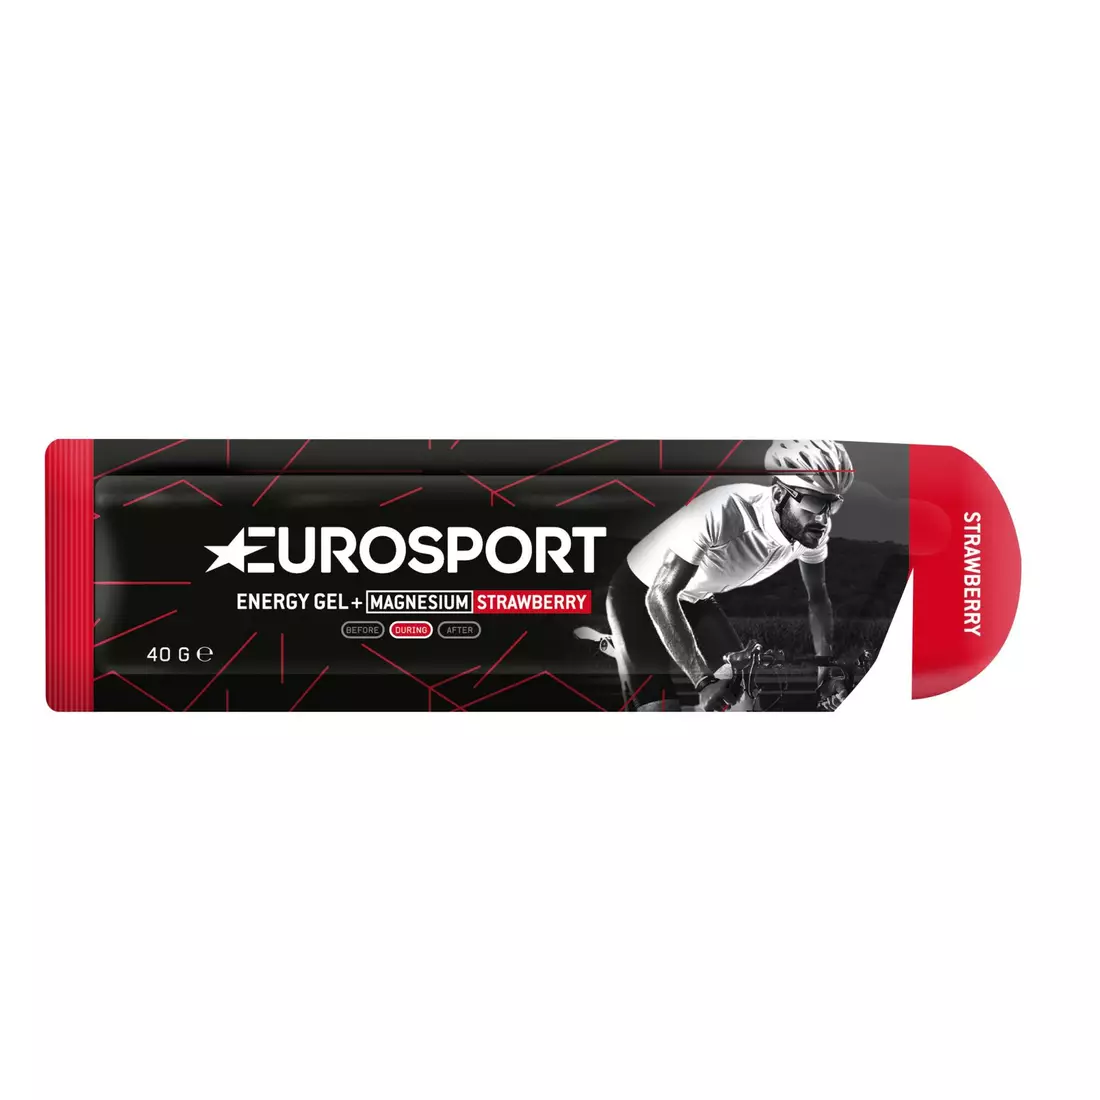 EUROSPORT energy gel NUTRITION strawberry +magnesium 40g E0026